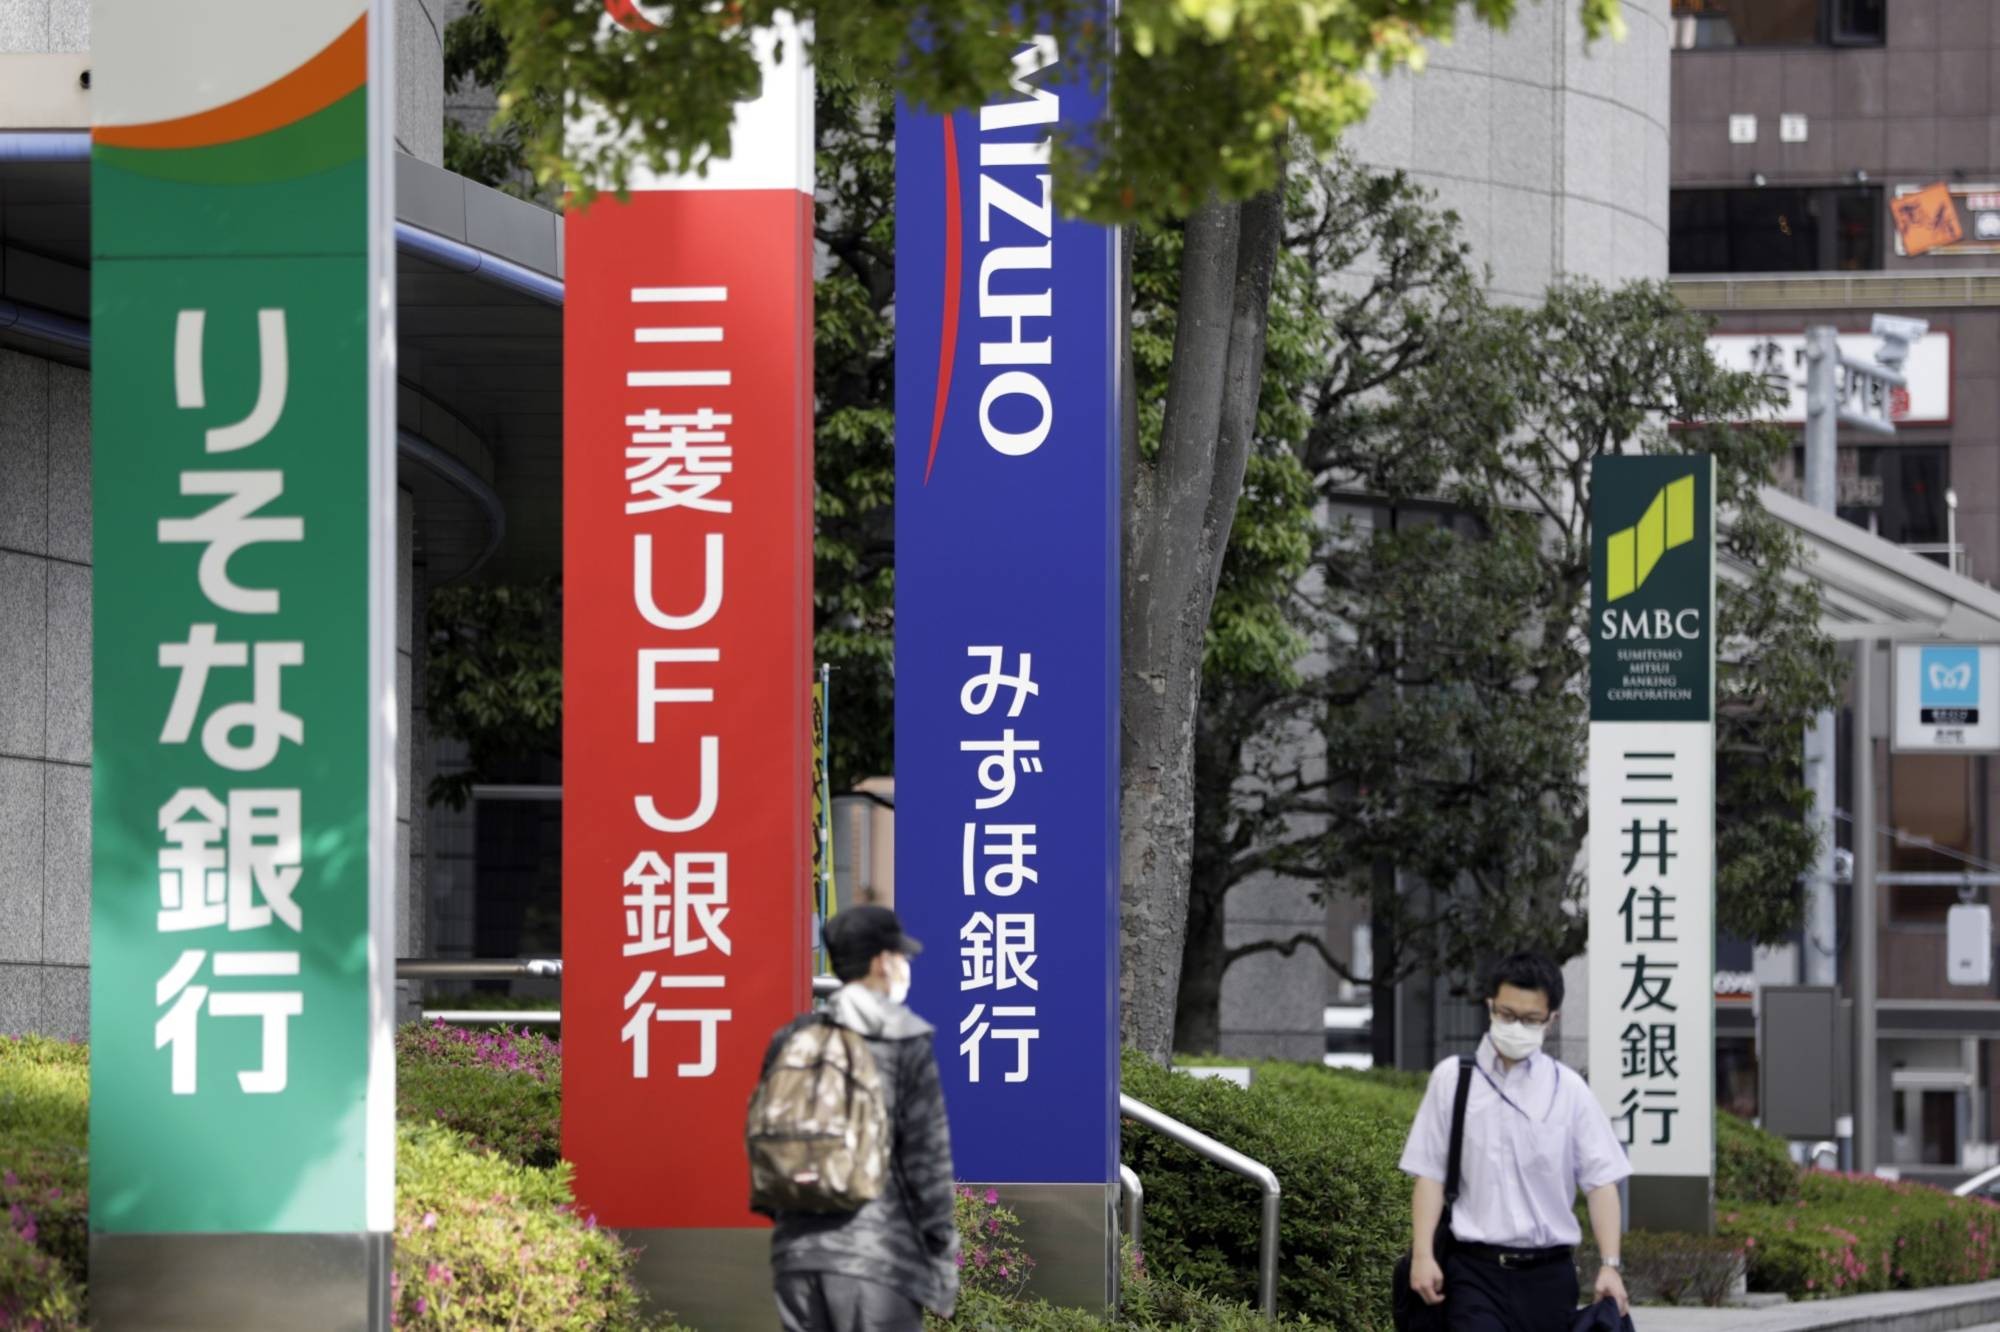  Ba ngân hàng lớn của Nhật Bản là MUFG, Mizuho và Suumitomo Mitsui sẽ ngừng các giao dịch bằng USD với Sberbank của Nga. (Nguồn: Japan Times)